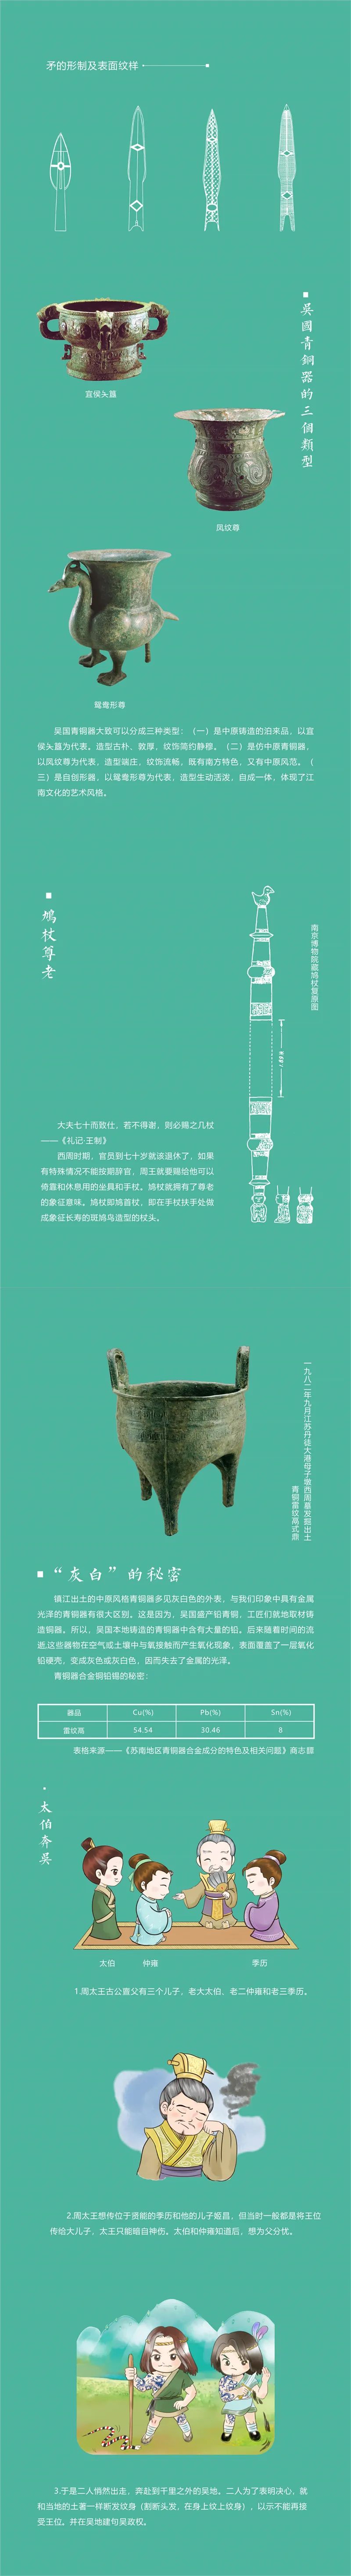 线上展览：输出与融合——镇江出土吴文化青铜器精品展